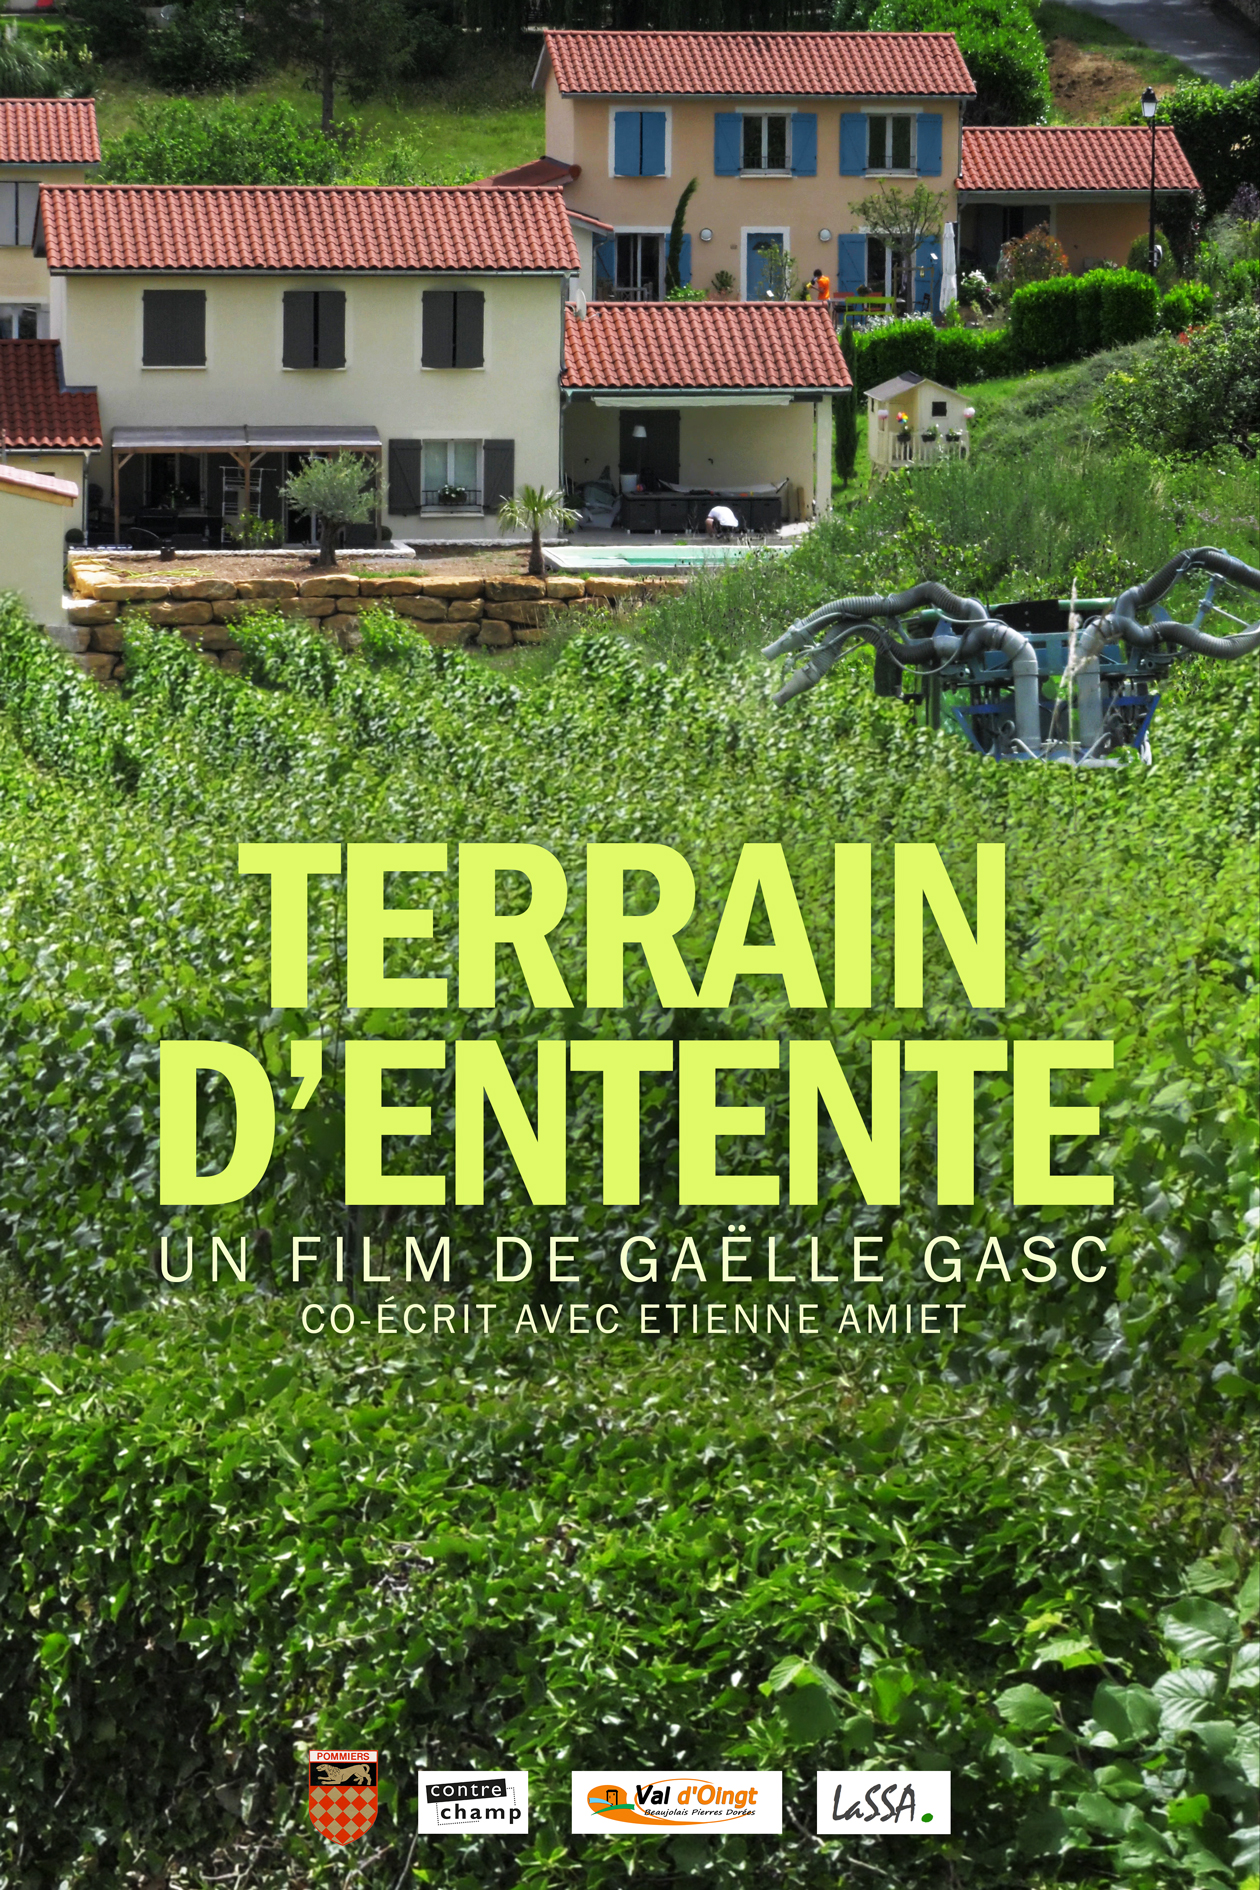 Terrain d’entente, film de Gaëlle Gasc, co-écrit avec Étienne Amiet, sociologue